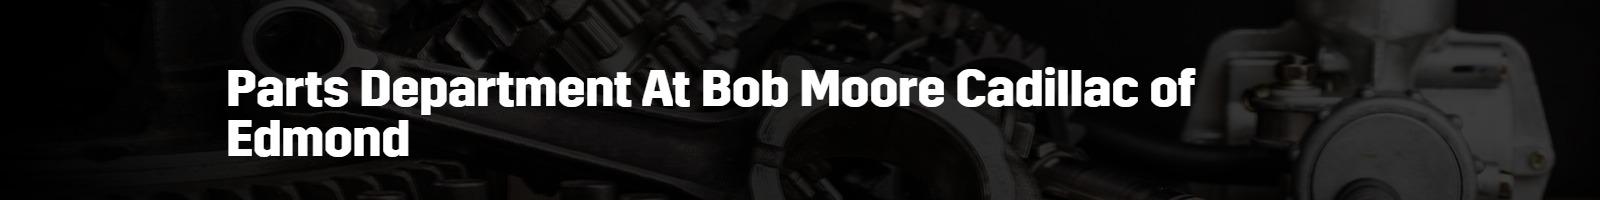 Parts Department Bob Moore Cadillac of Edmond